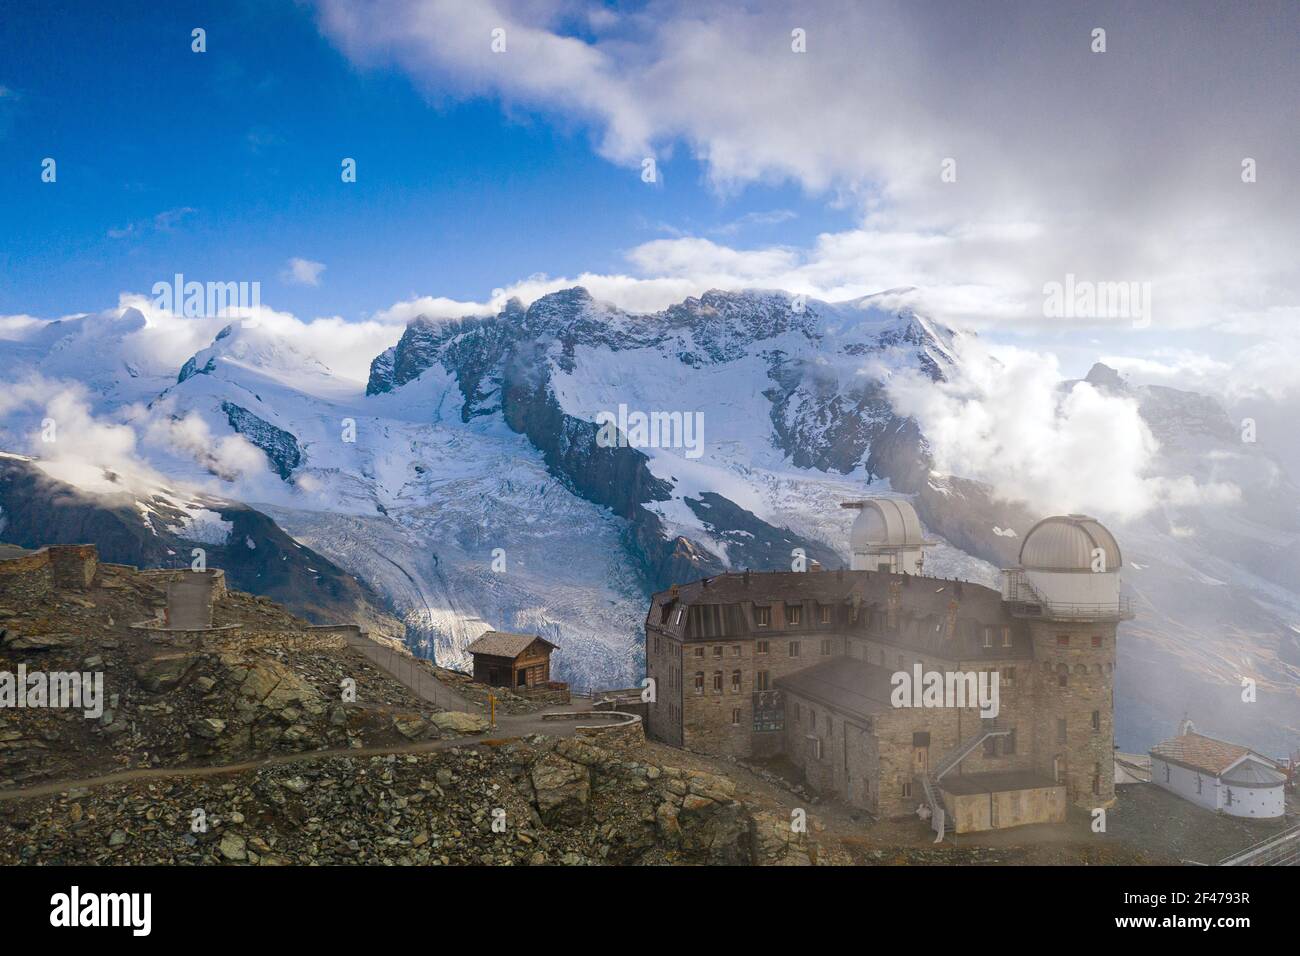 Vue sur les sommets enneigés de Castor, Pollux, Roccia Nera et Breithorn depuis Kulmhotel Gornergrat, Zermatt, canton du Valais, Suisse Banque D'Images